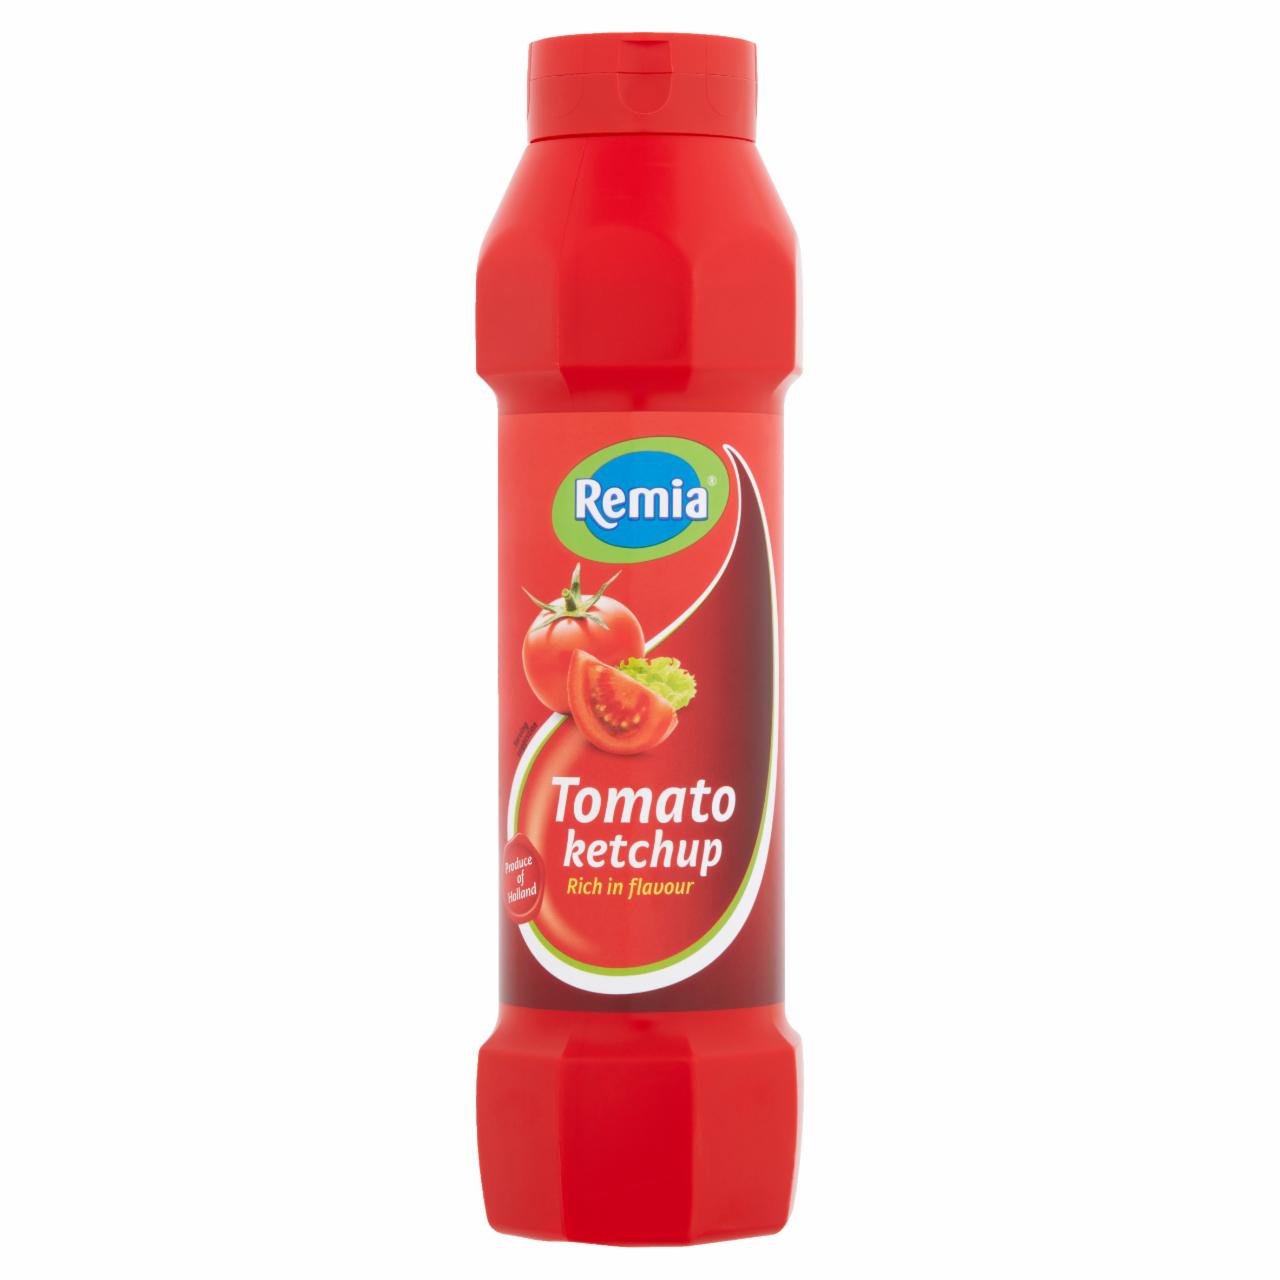 Képek - Remia ketchup 750 ml